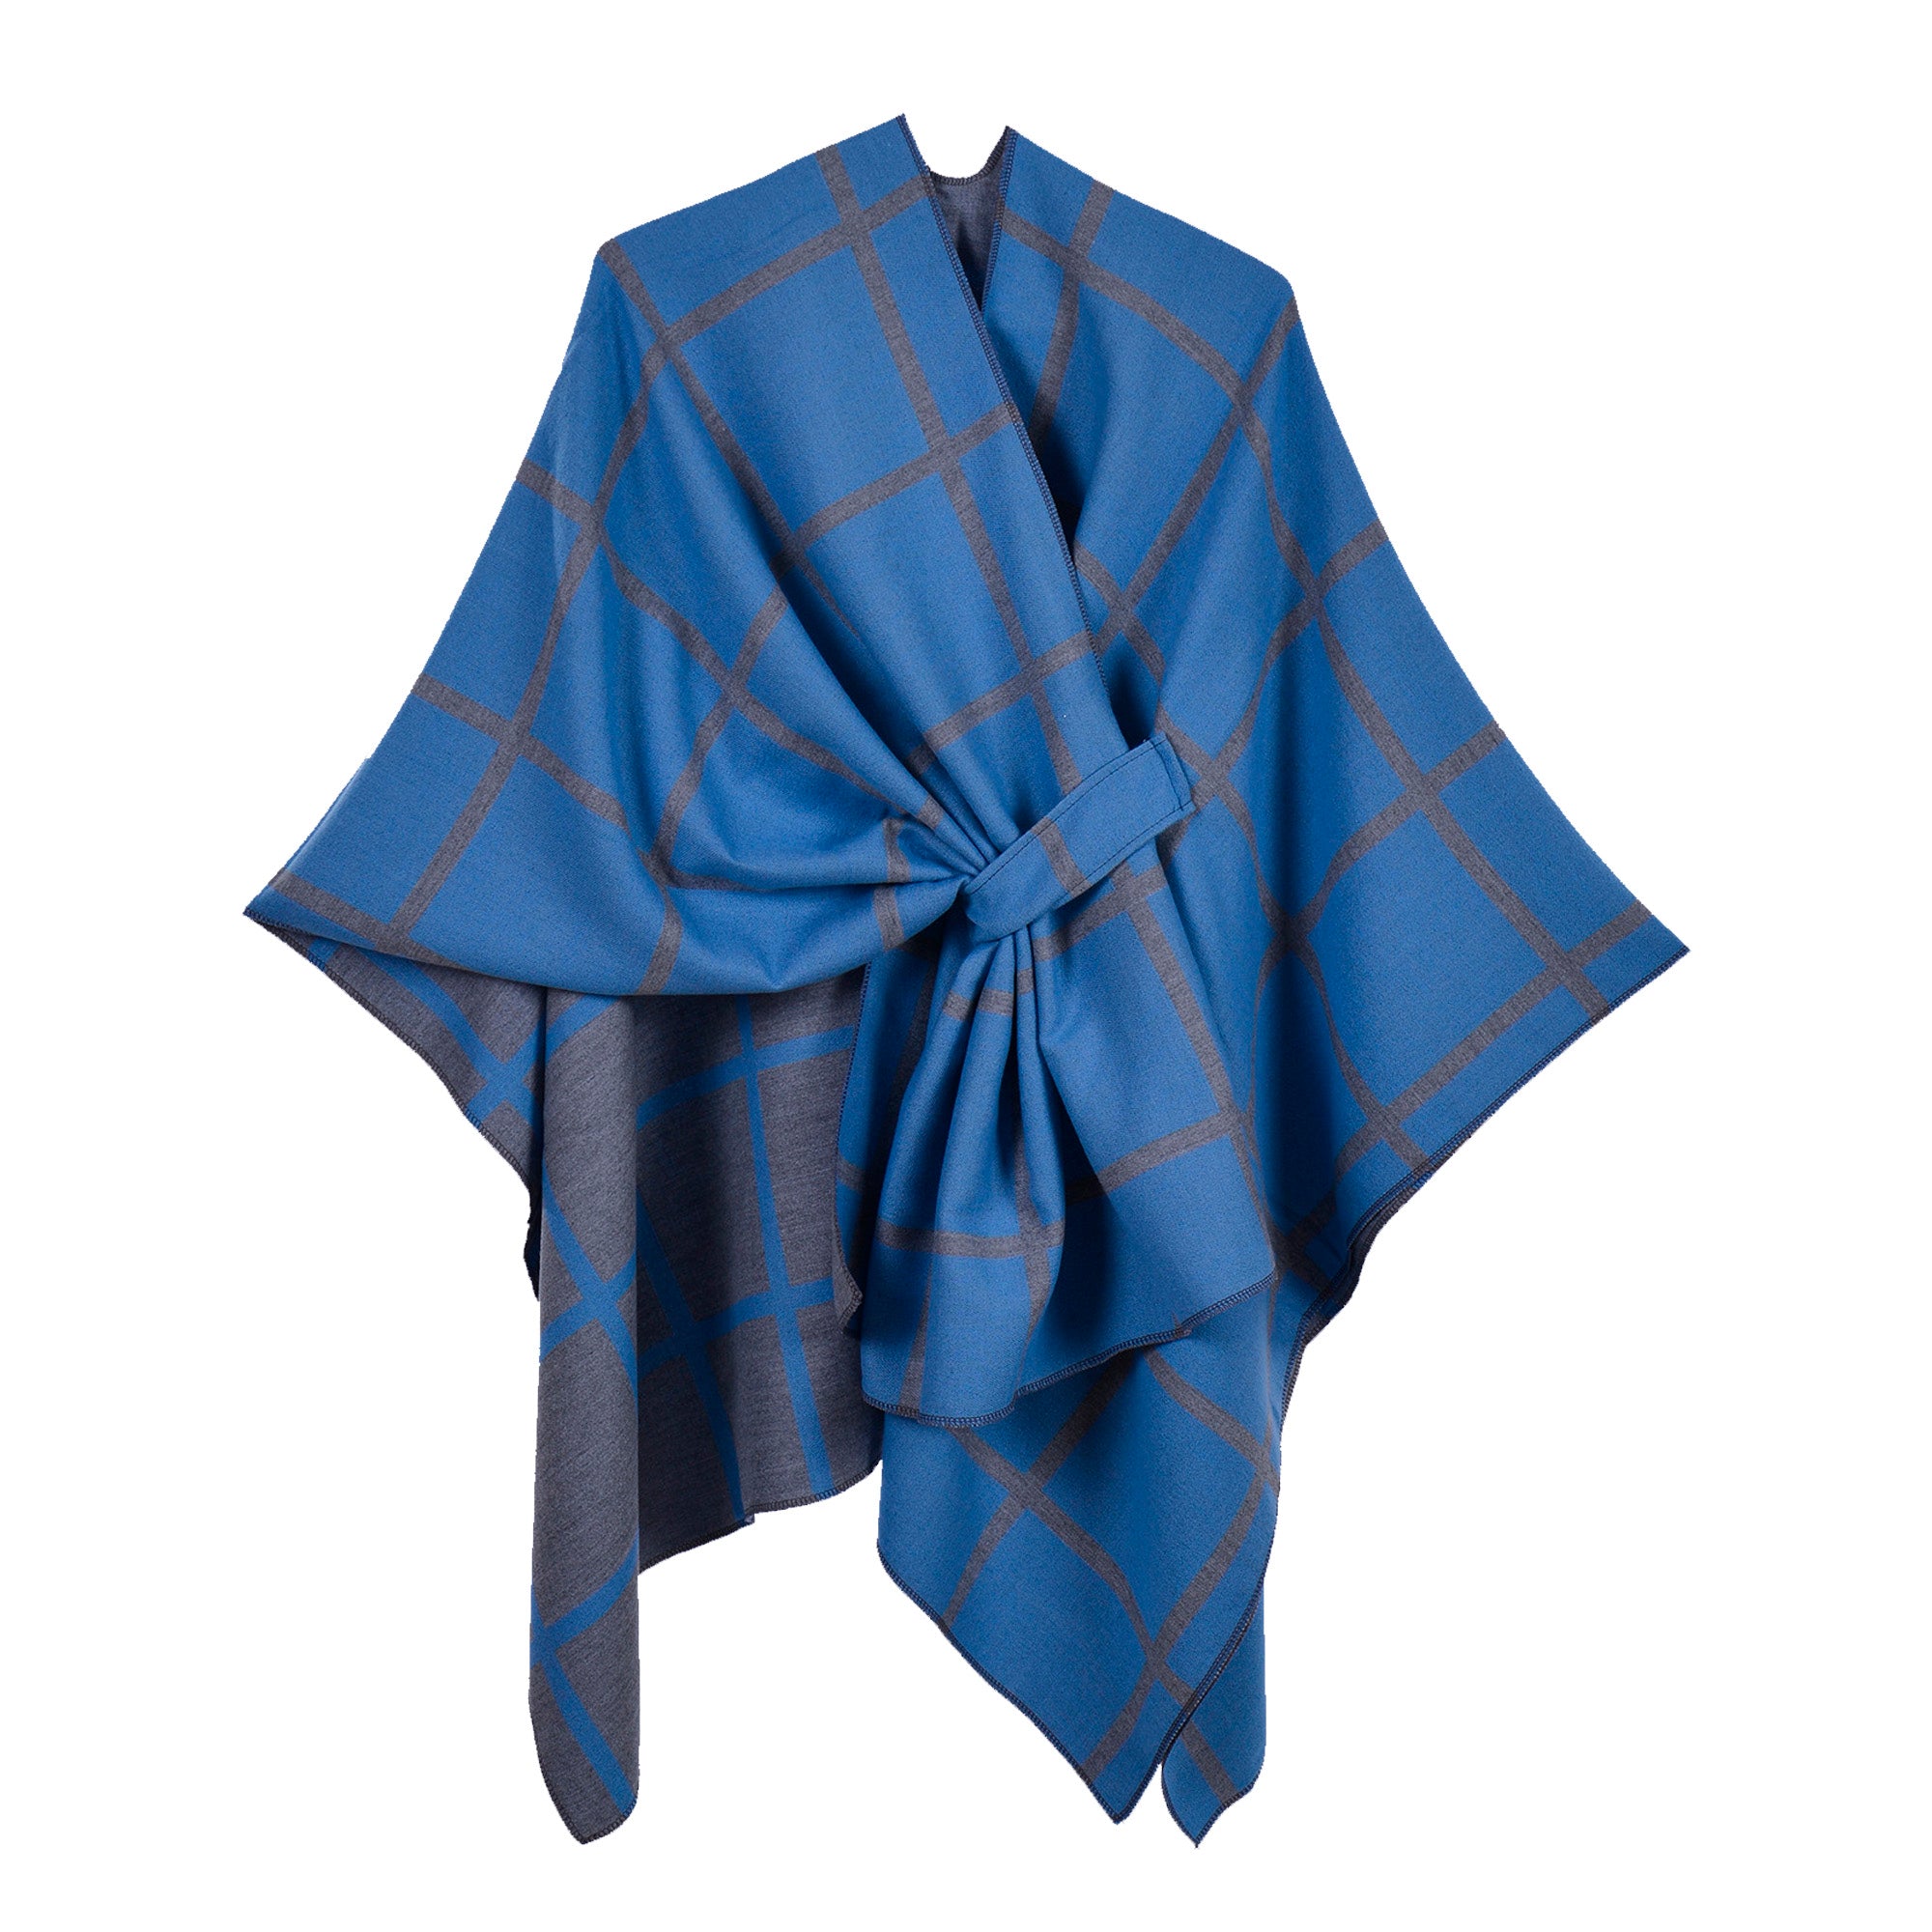 New plaid shawl with bar blue